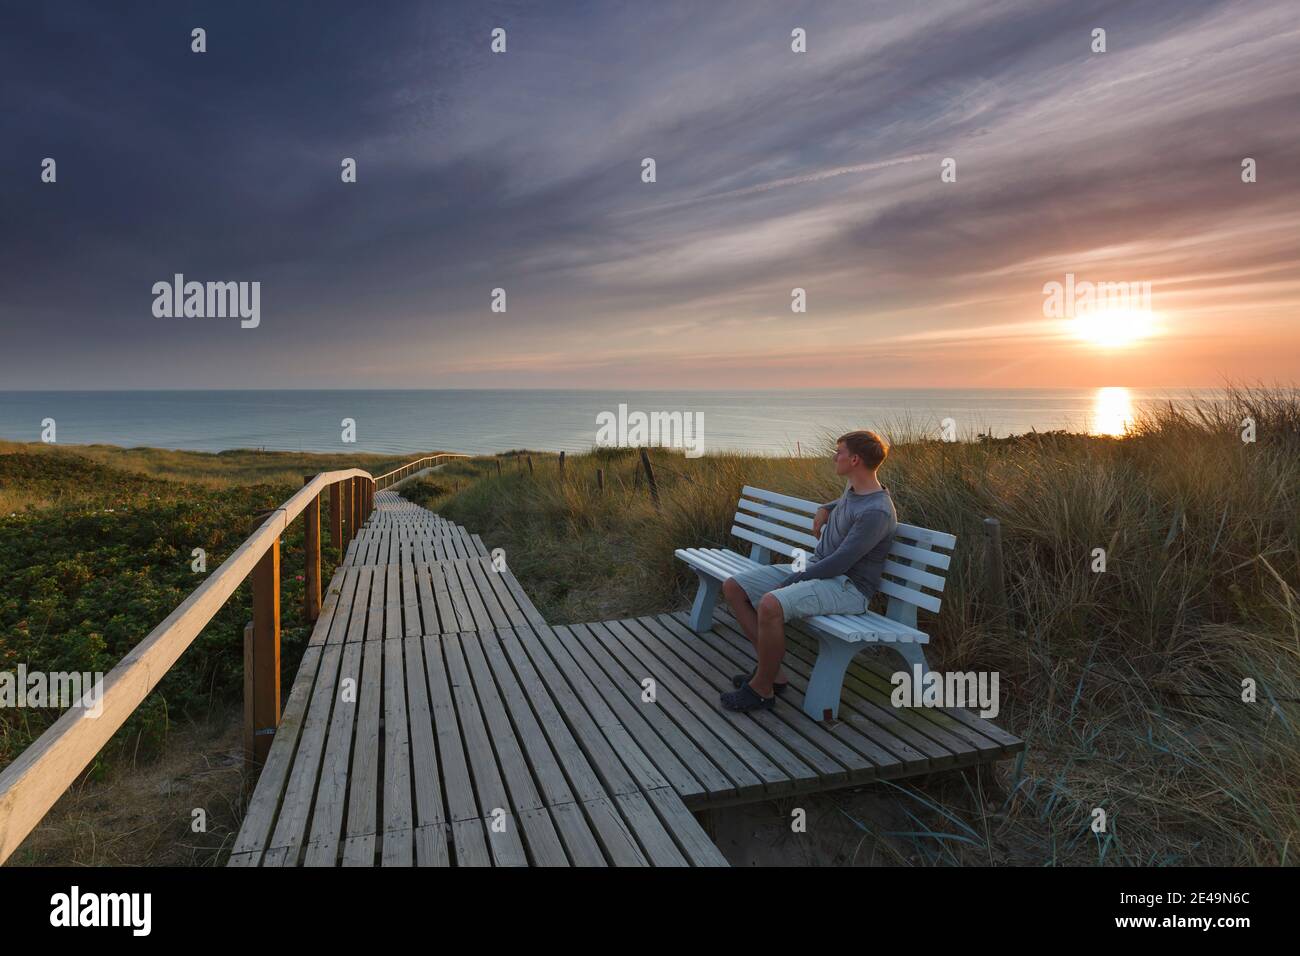 Peu avant le coucher du soleil, une personne est assise sur un banc au passage de la plage à Rantum, sur l'île de Sylt, dans le nord de la Frise, au Schleswig-Holstein, en Allemagne Banque D'Images